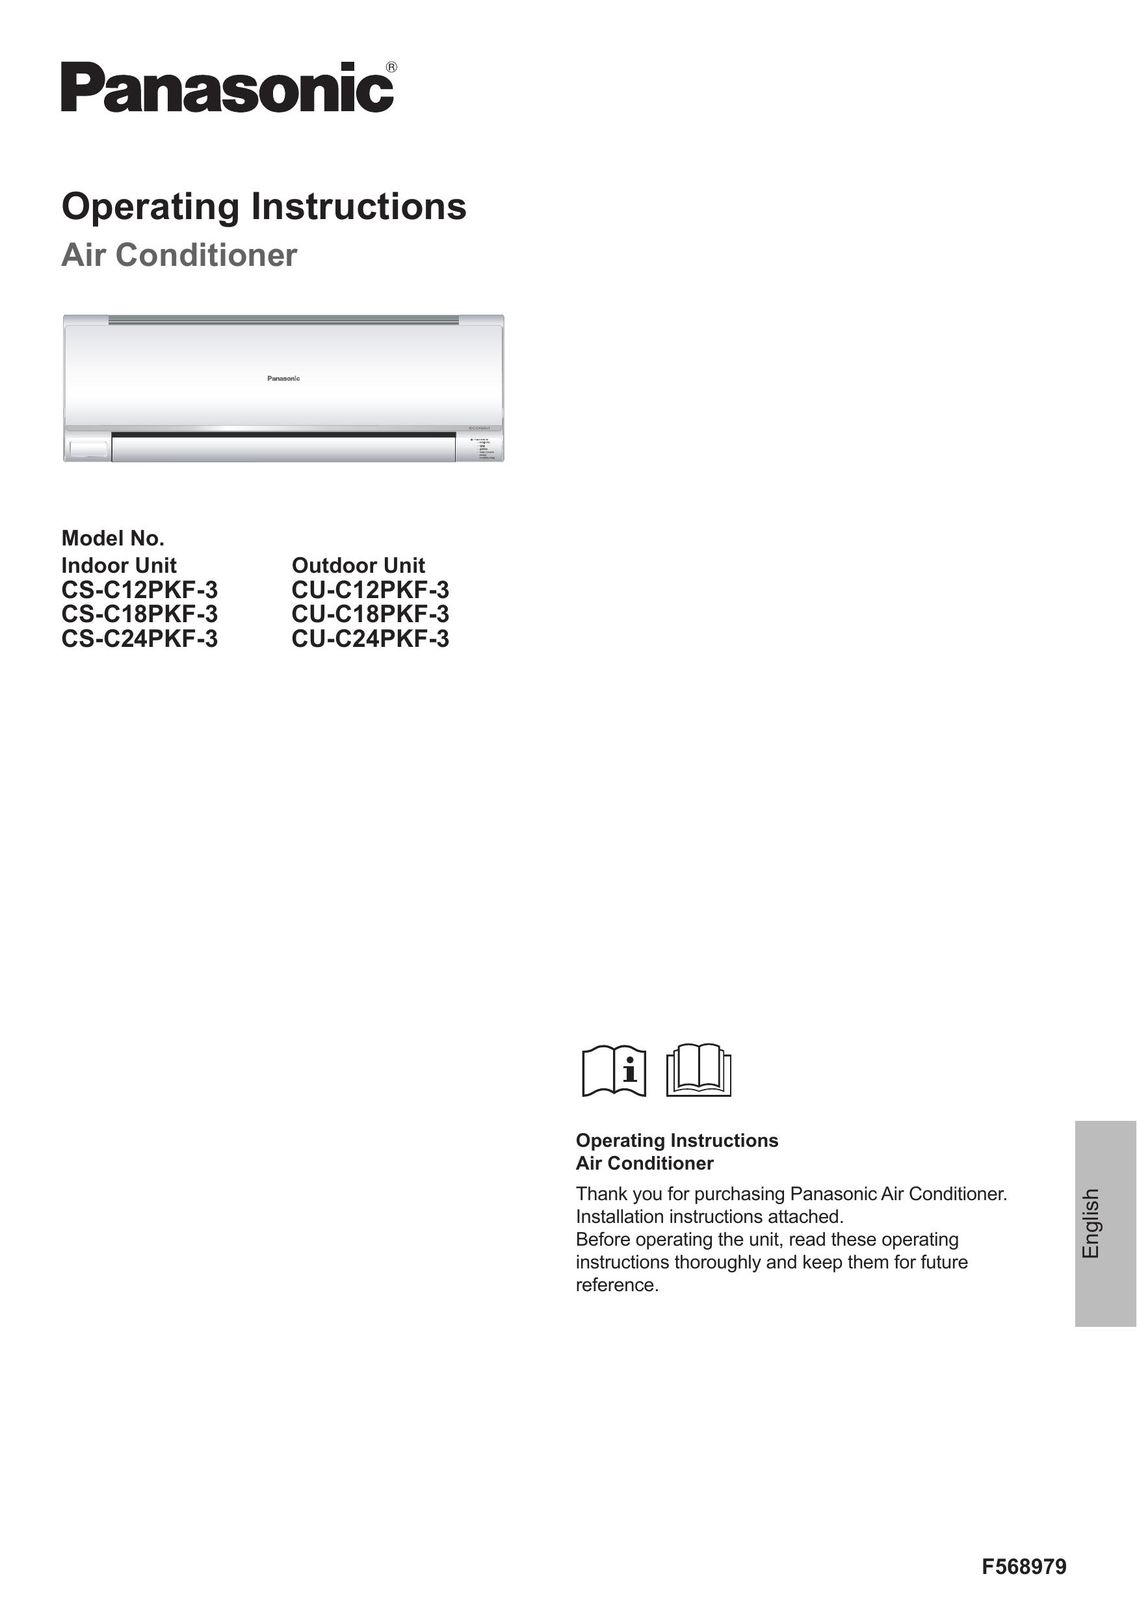 Panasonic CS-C24PKF-3 Air Conditioner User Manual